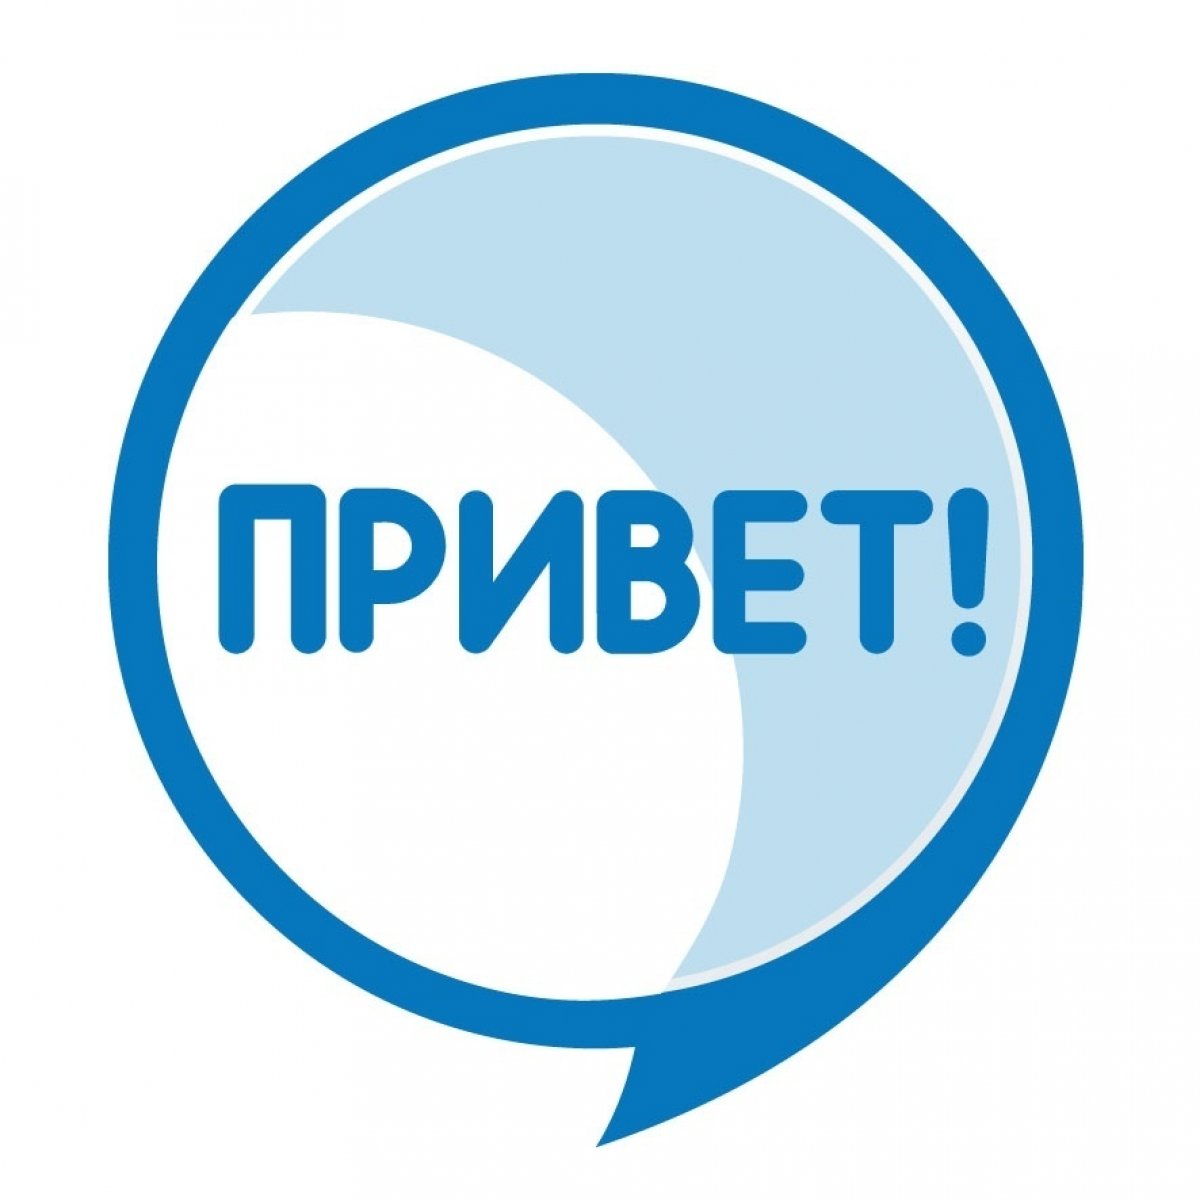 На базе Центра тестирования РГПУ им. А. И. Герцена открылся разговорный клуб, созданный специально для иностранцев, изучающих русский язык.